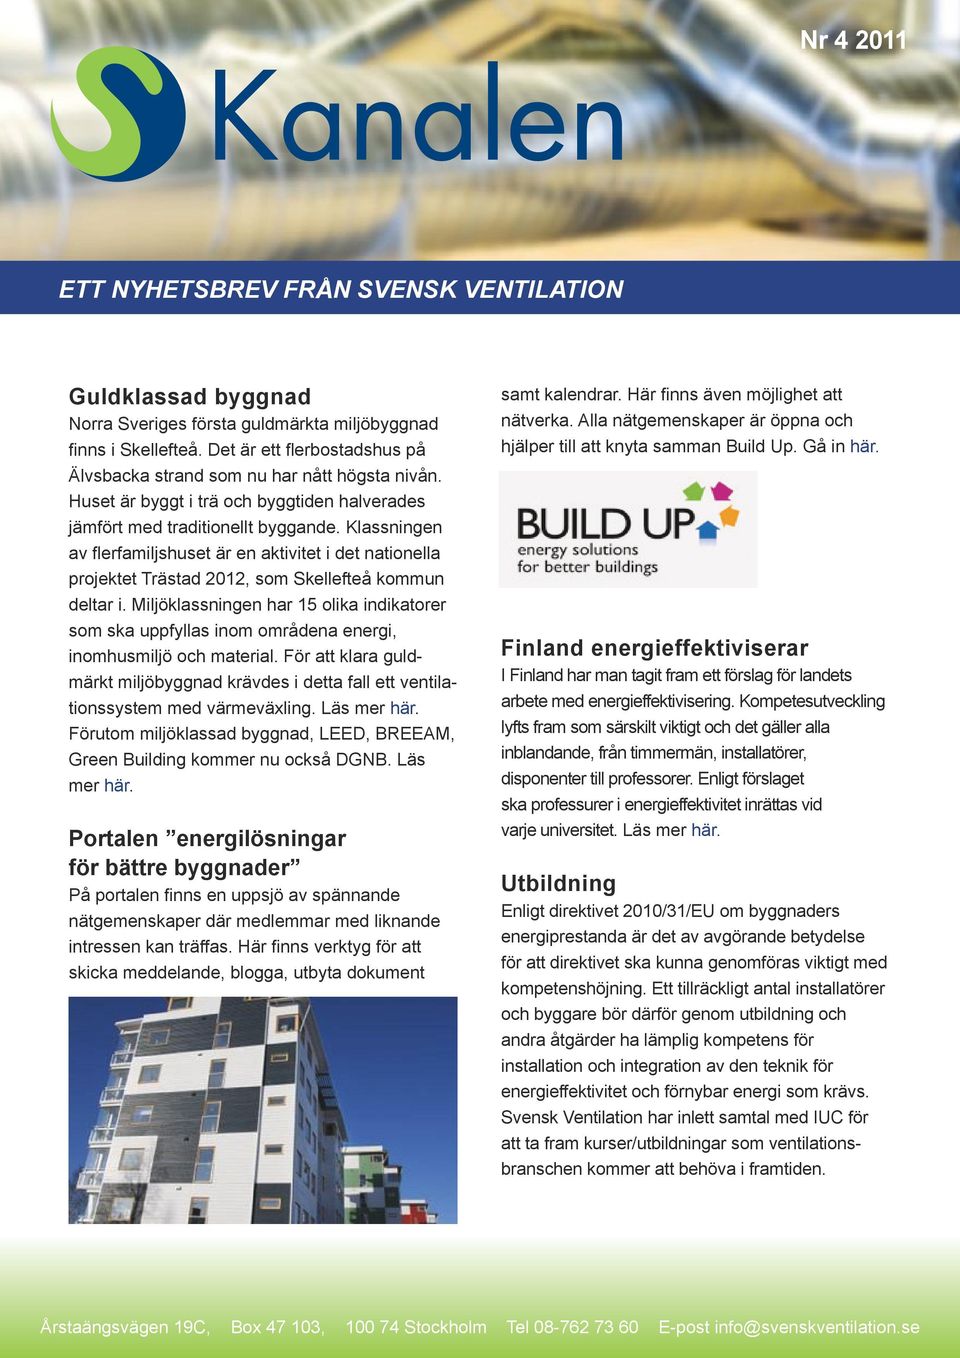 Klassningen av flerfamiljshuset är en aktivitet i det nationella projektet Trästad 2012, som Skellefteå kommun deltar i.